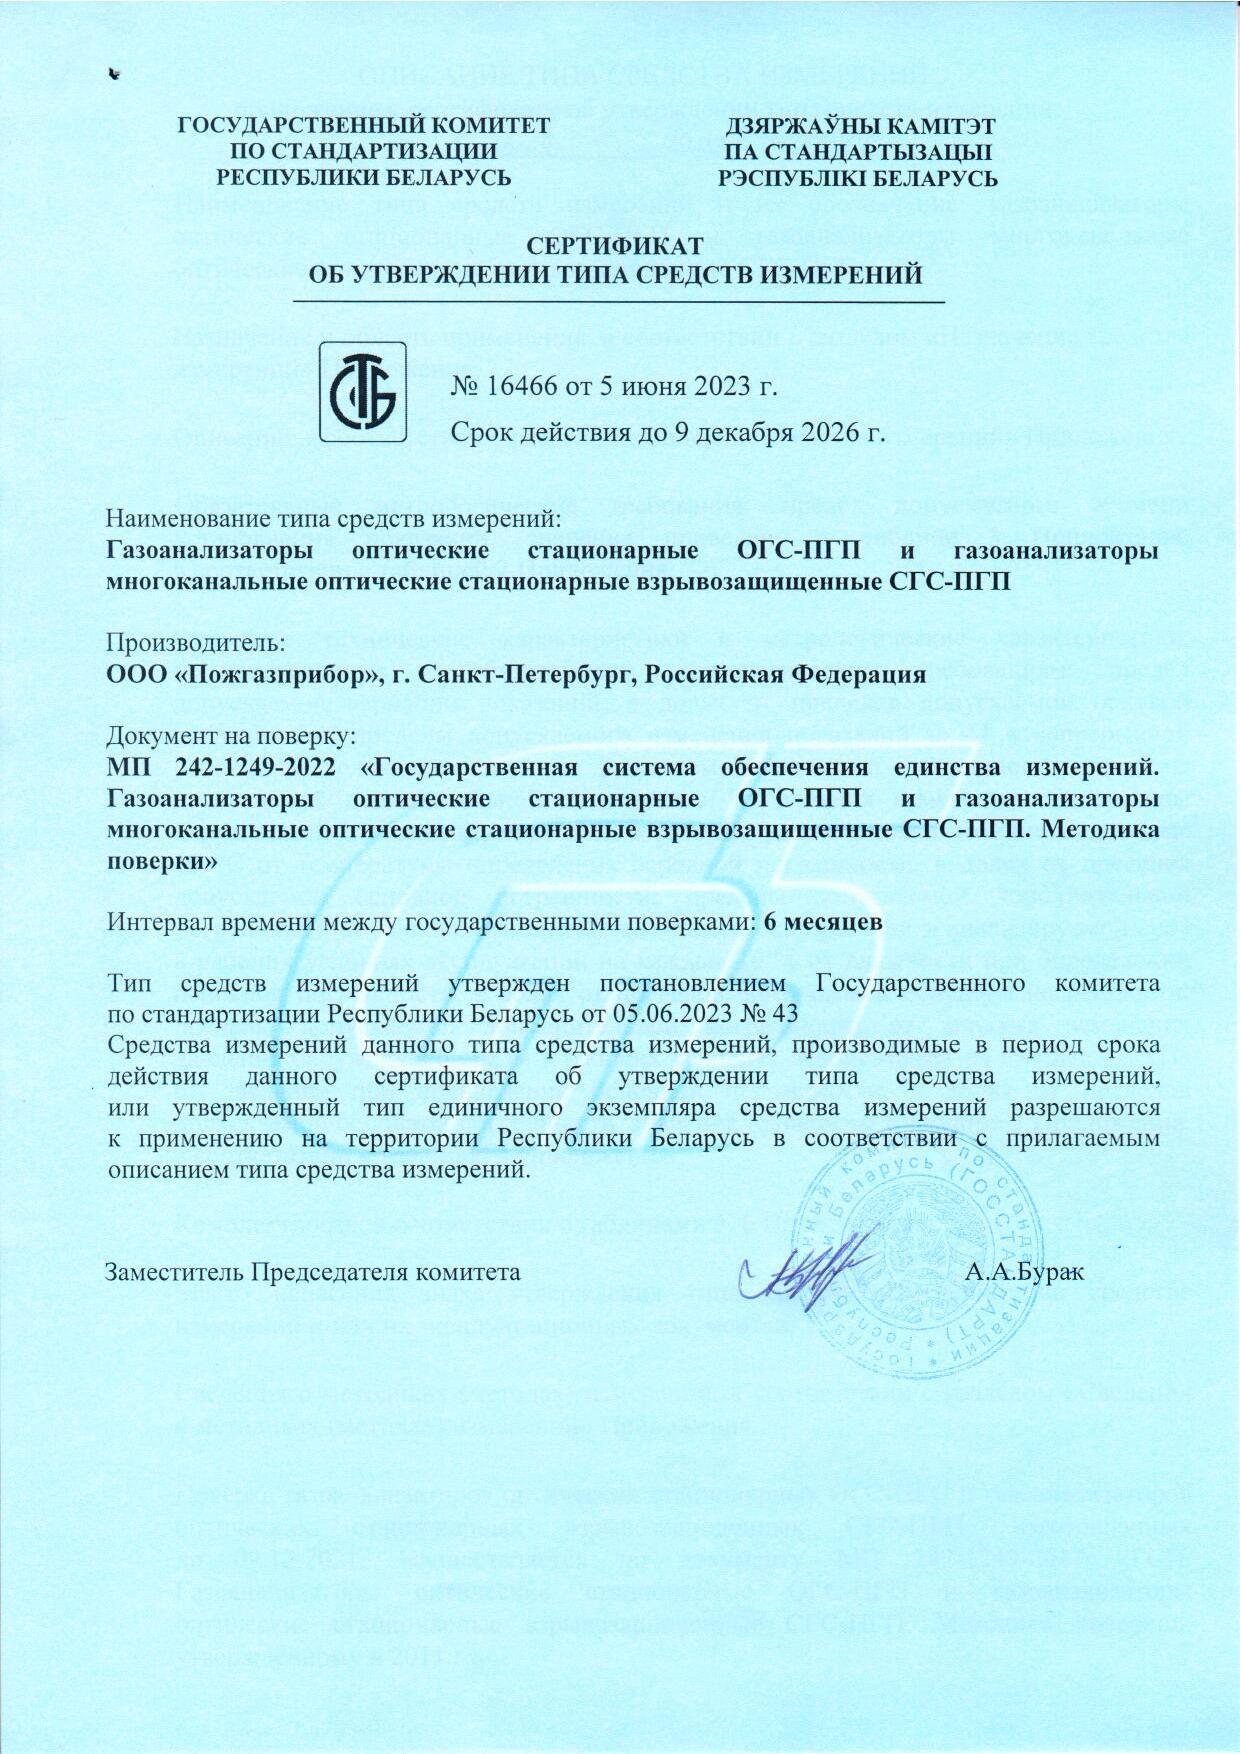 ОГС-ПГП и СГС-ПГП получили новое свидетельство СИ Республики Беларусь